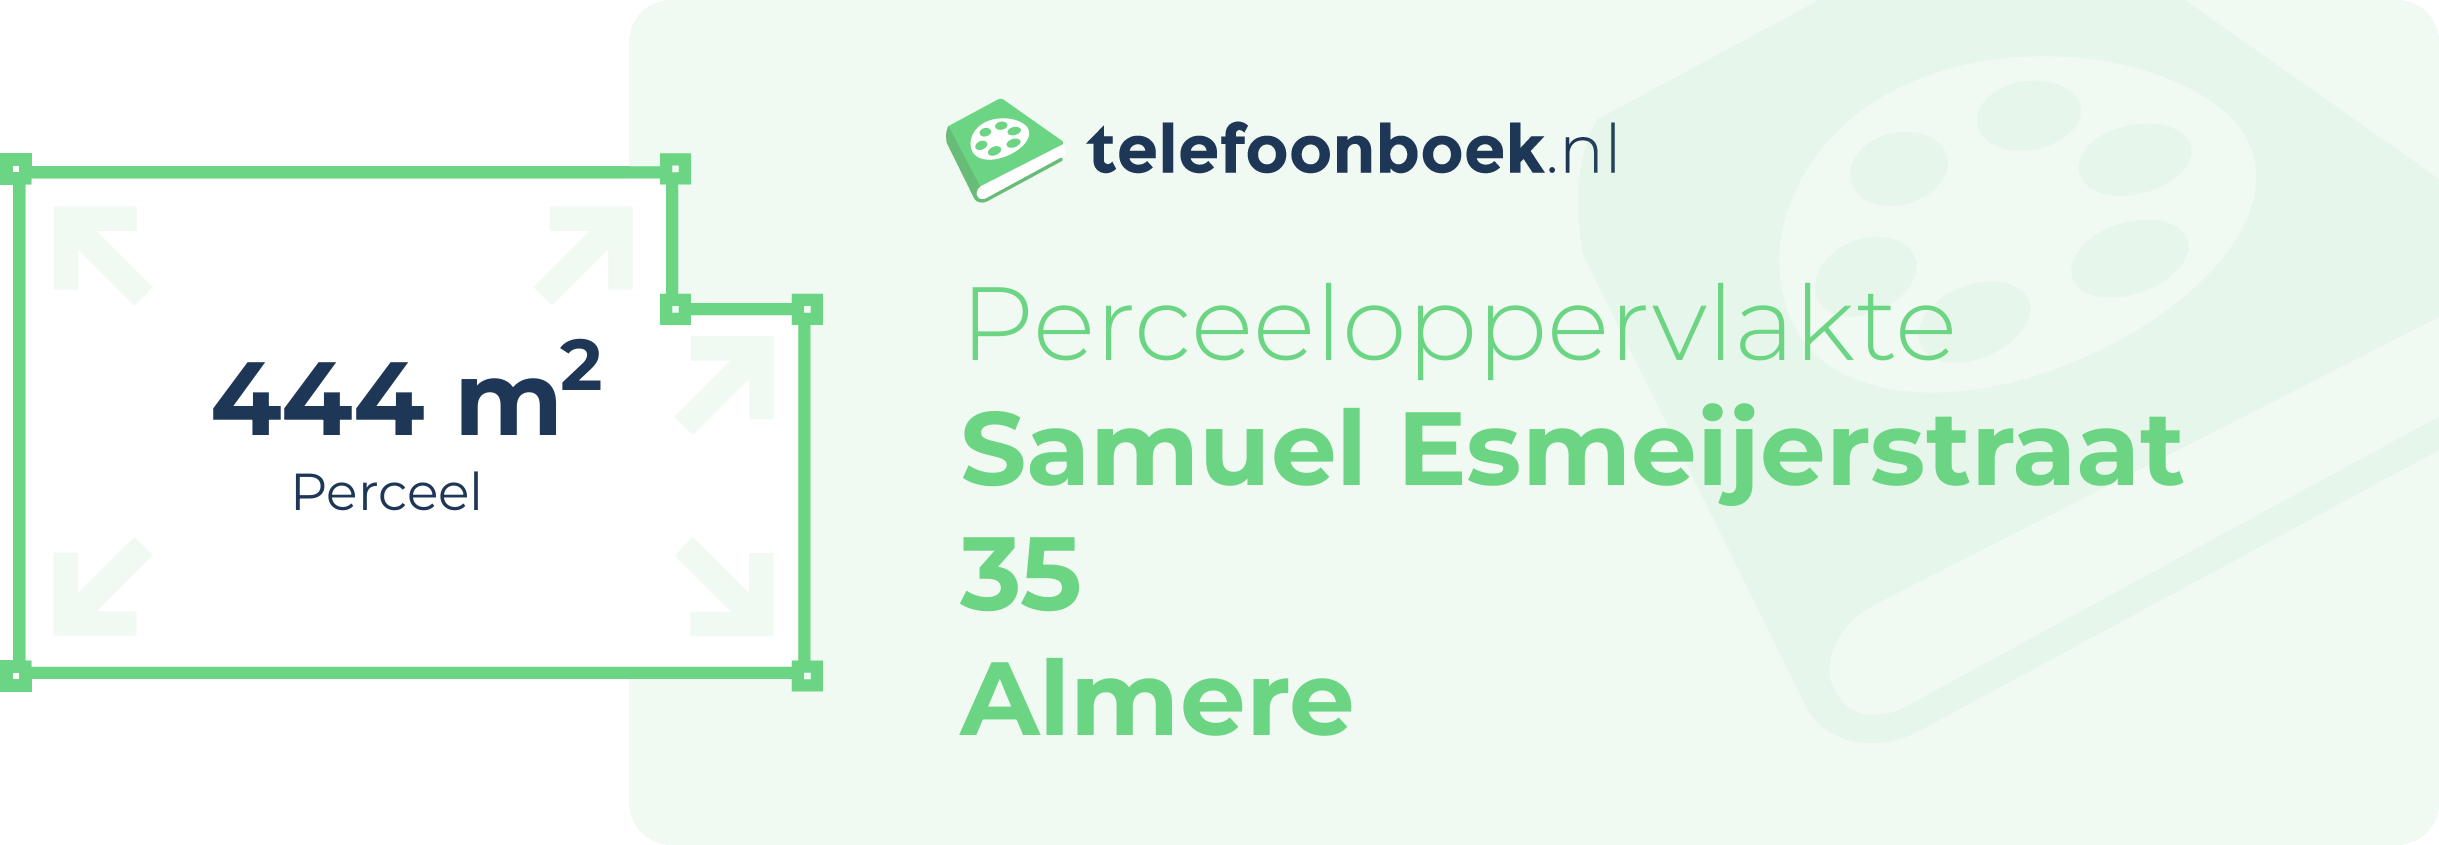 Perceeloppervlakte Samuel Esmeijerstraat 35 Almere